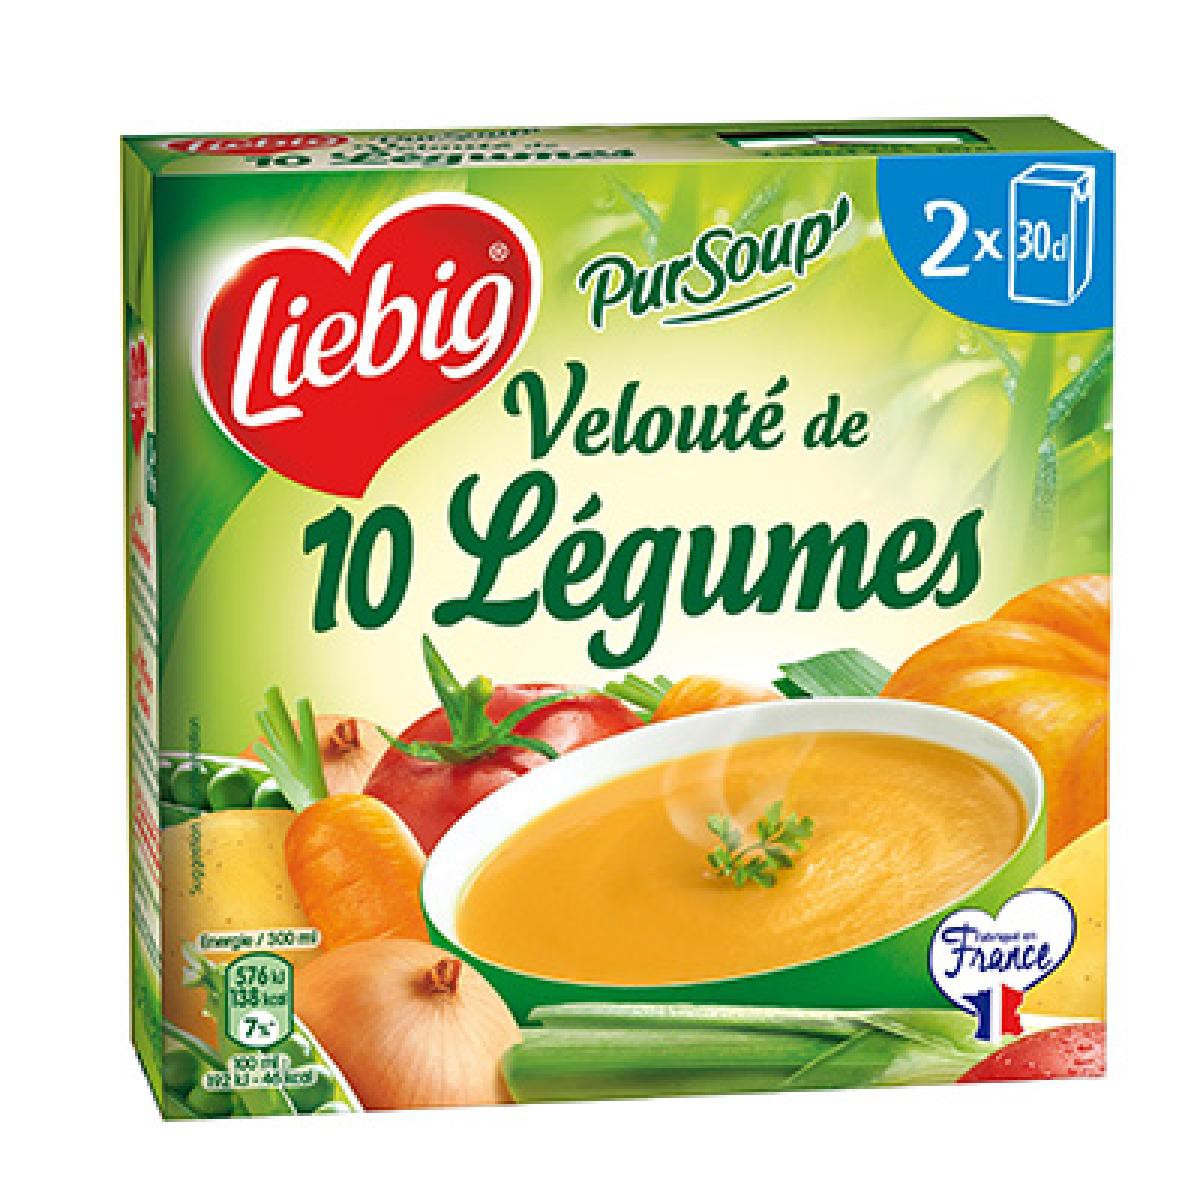 Liebig Pur Soup 10 Leg 2x30cl